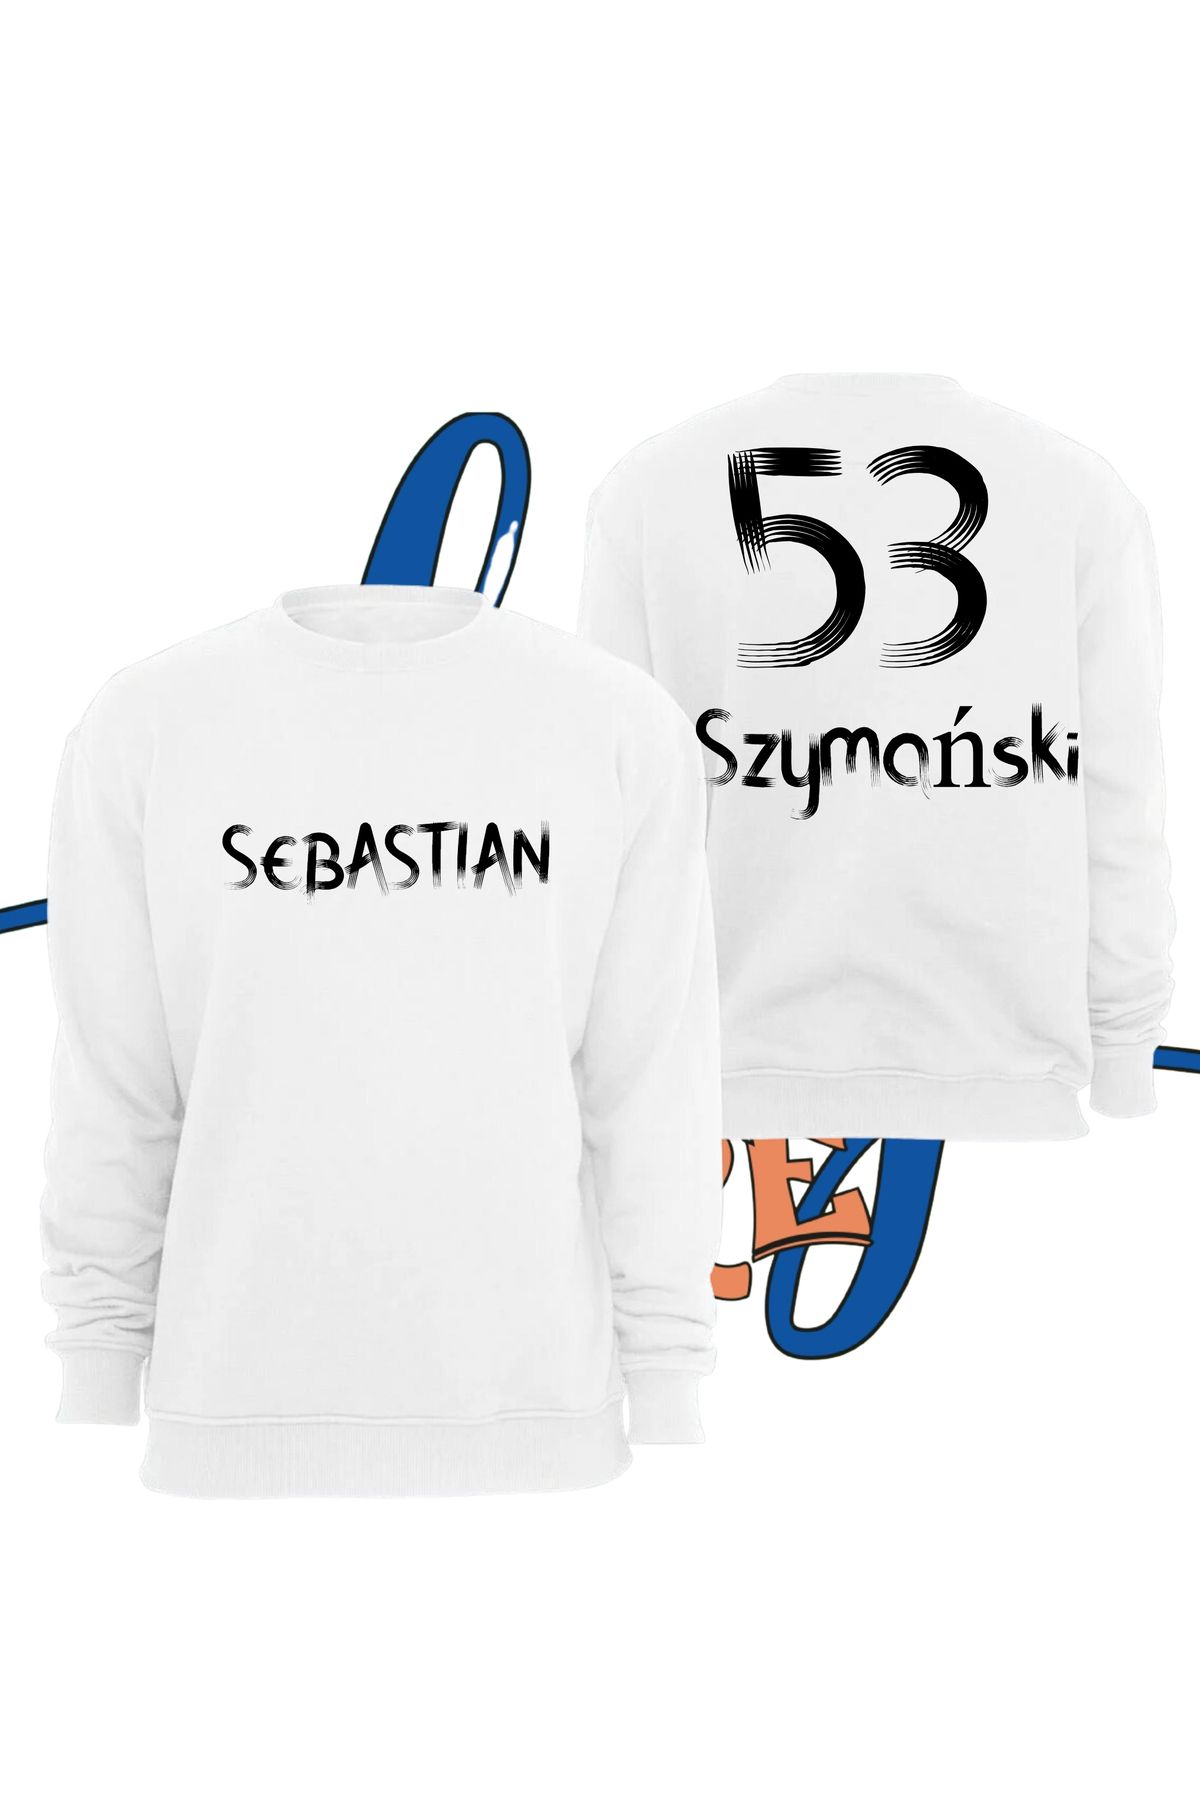 Biy Store Sebastian Szymanski 53 numara forma yazılı unisex bisiklet yaka sıfır yaka spor sweatshirt